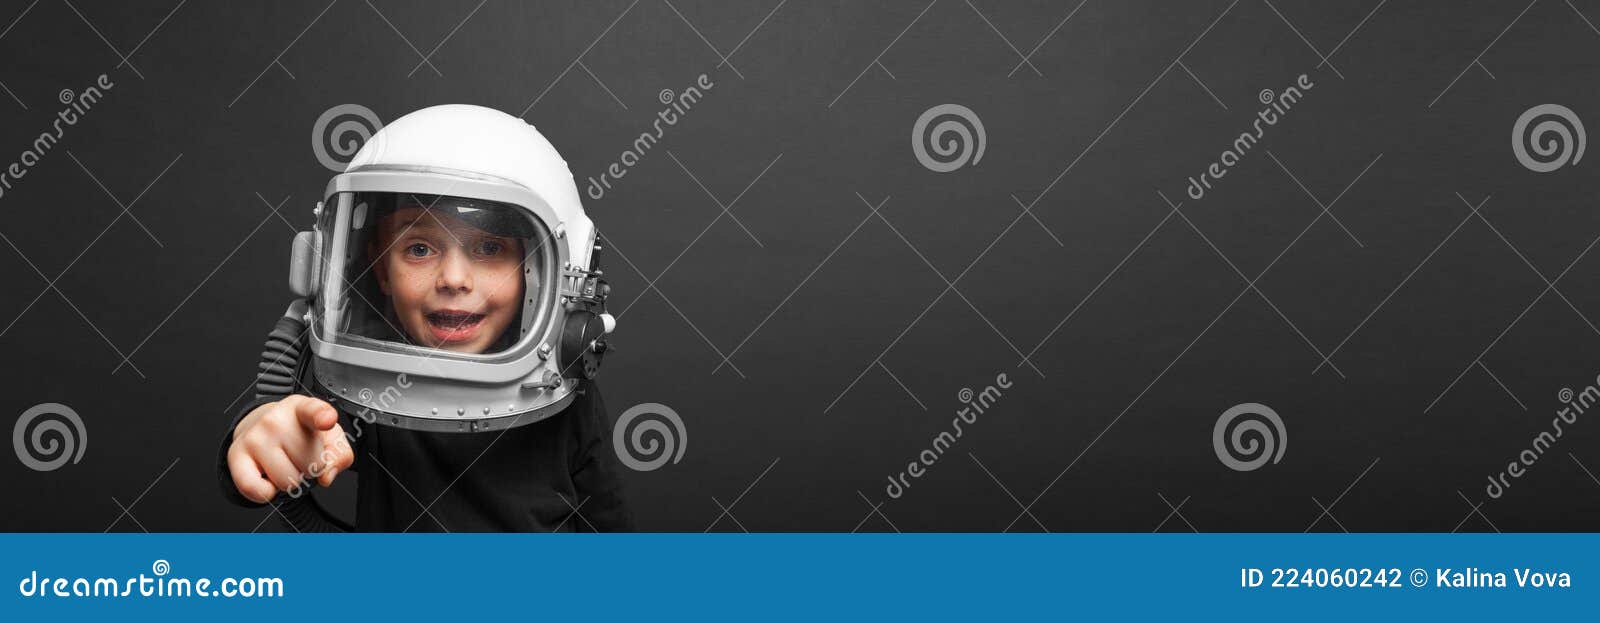 El Niño Planea Volver a La Escuela Usando Casco Astronauta Para Convertirse  En Astronauta Foto de archivo - Imagen de espacio, libro: 224060242